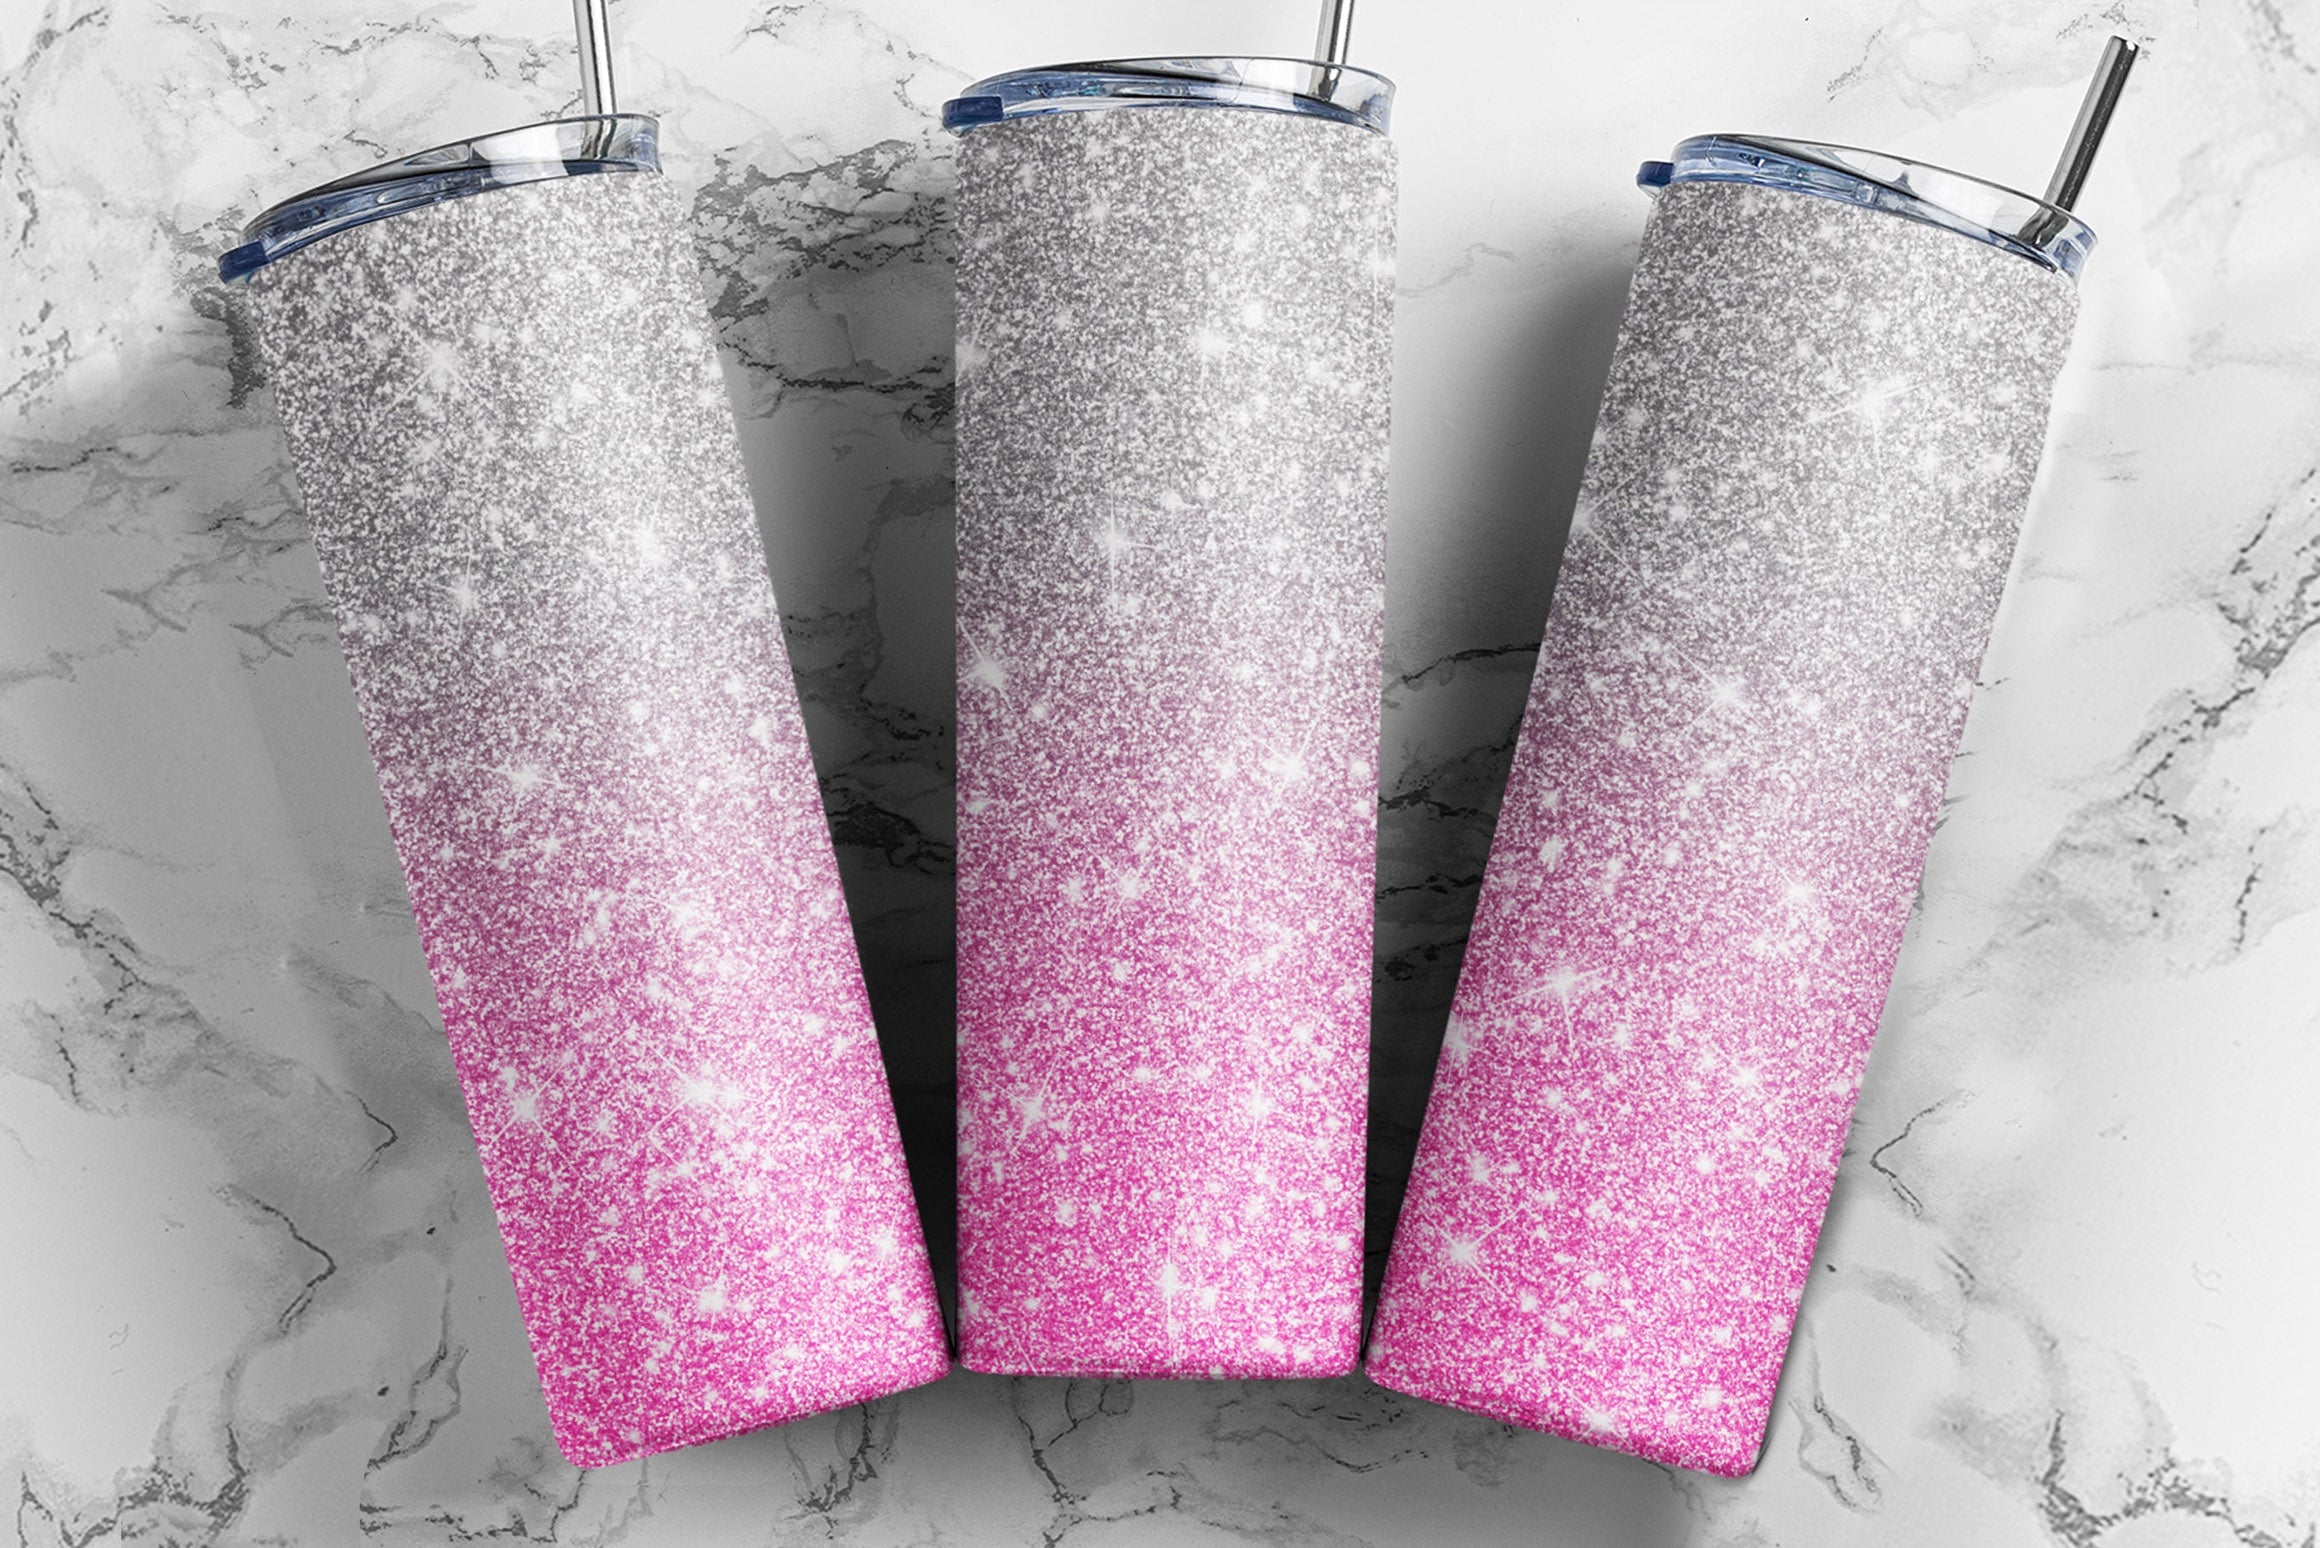 20 oz Skinny Tumbler Silver Pink Glitter Sublimation Design - Full Tumbler  Wrap - PNG Digital Download - So Fontsy